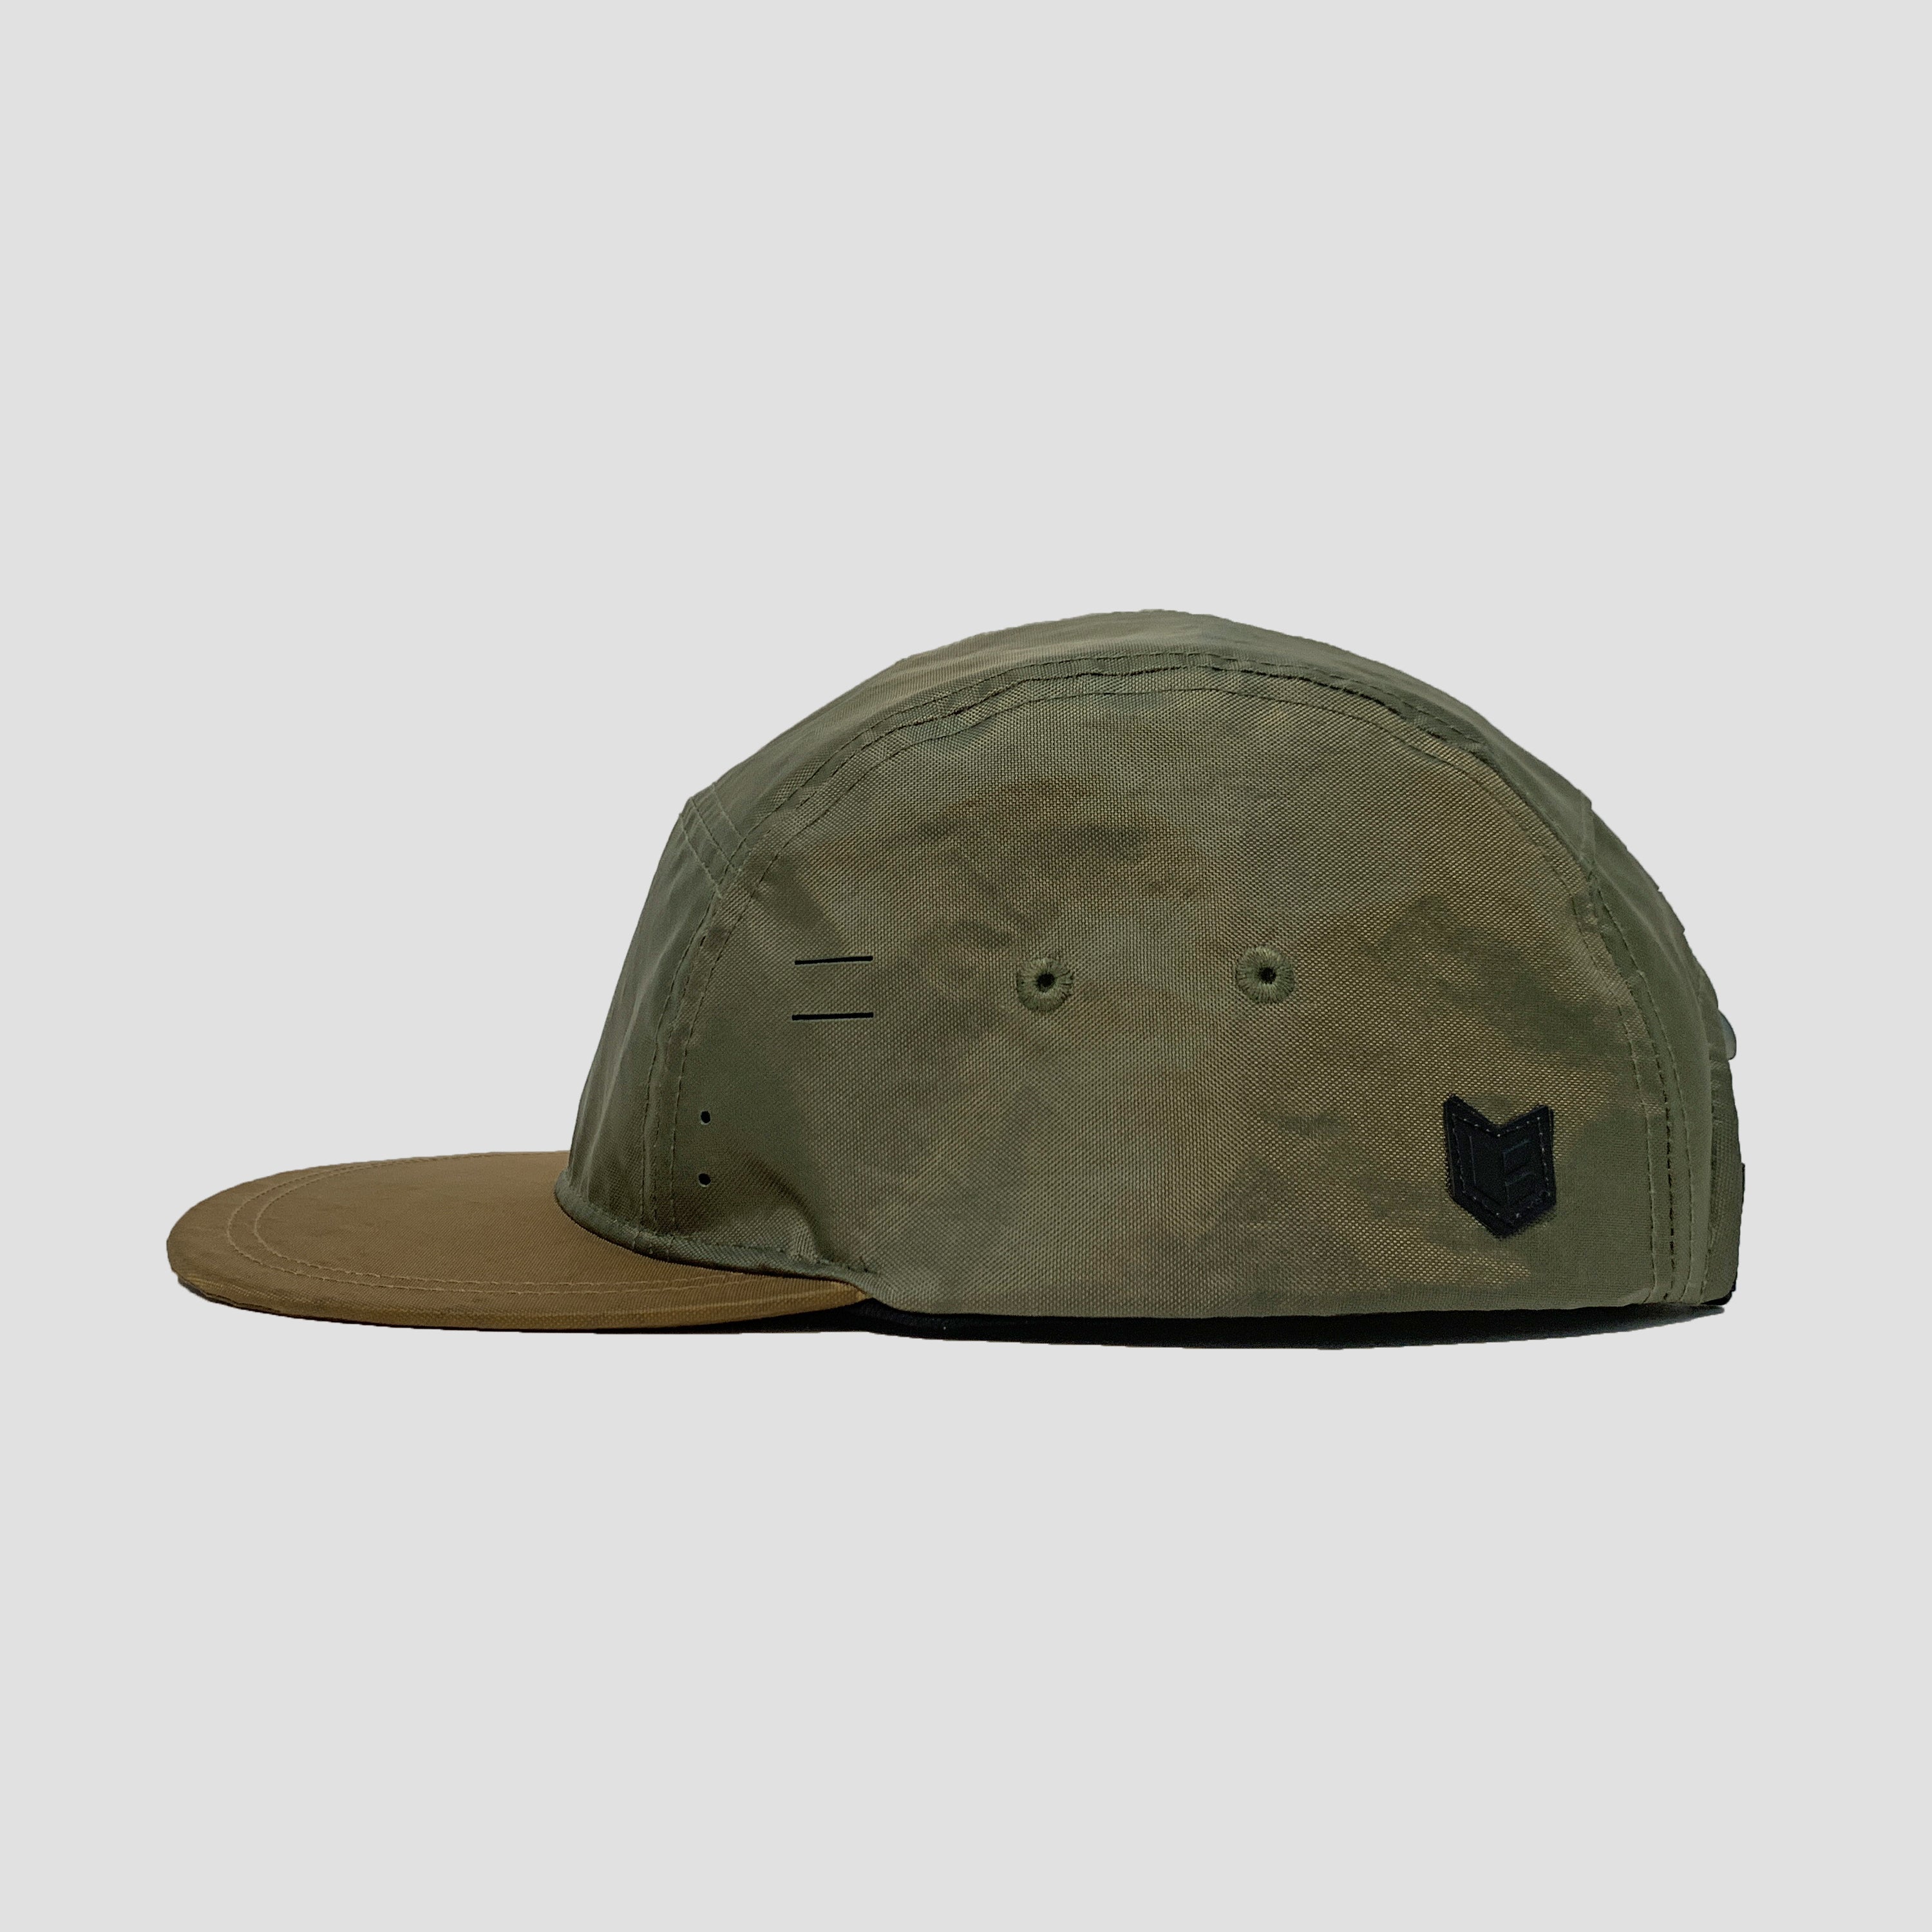 BASI[X] CAMPER HAT